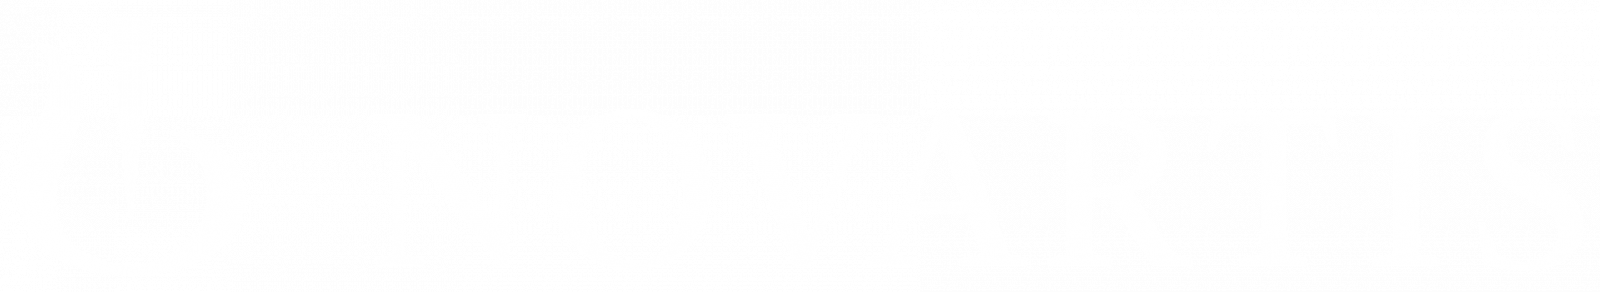 Novartis Logo white with clear background v2